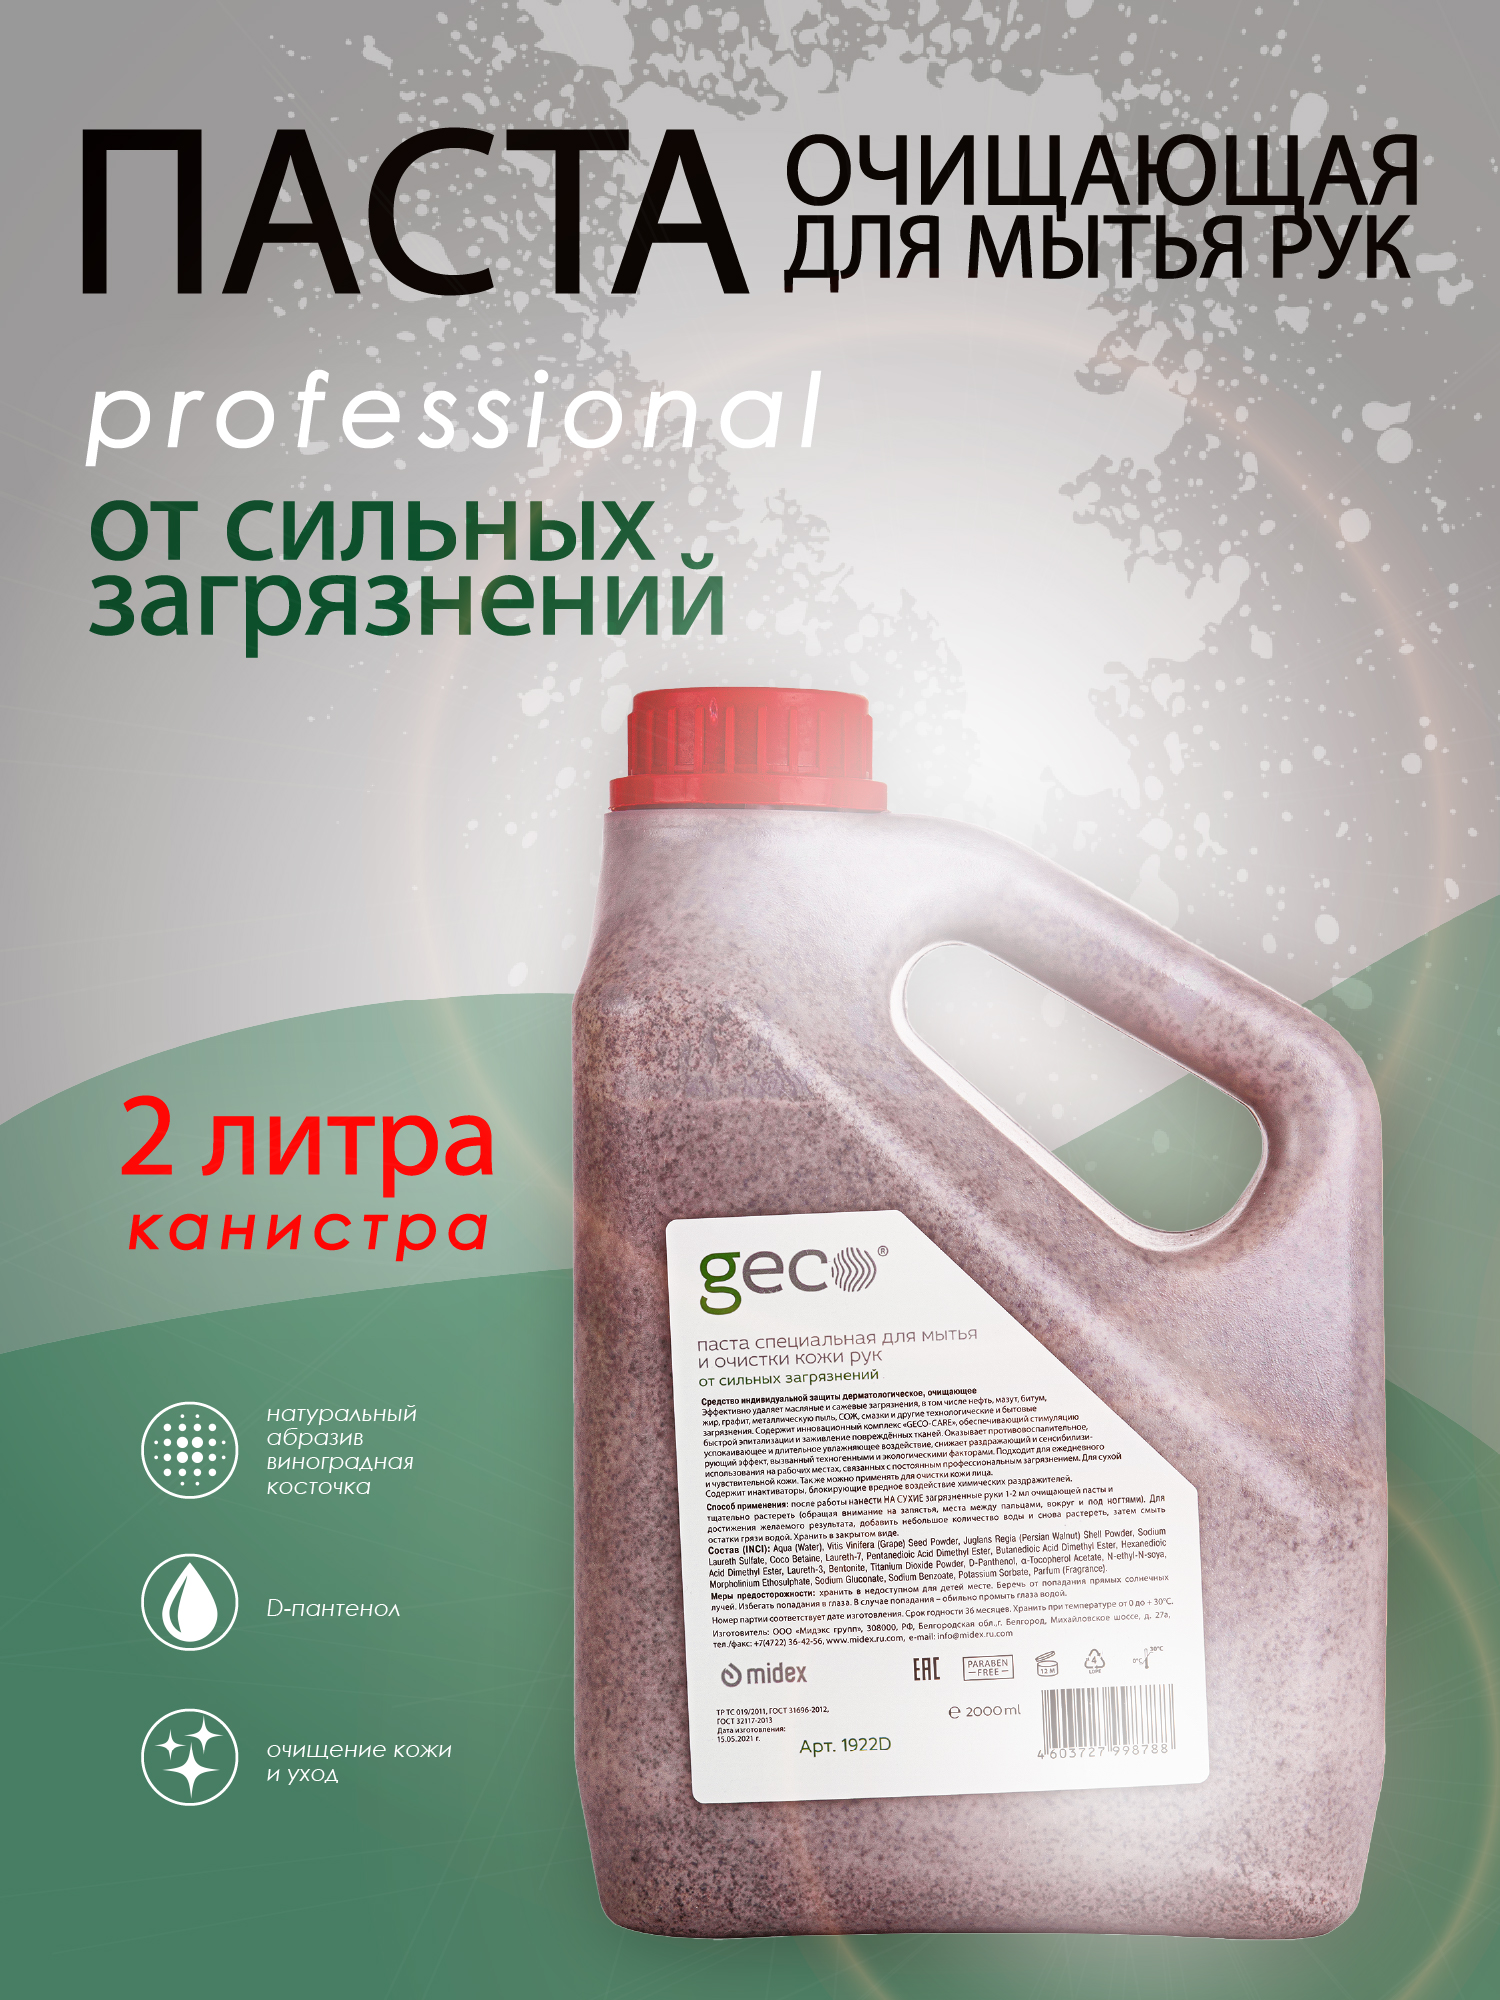 Паста GECO очищающая для очистки рук и тела, от любых сильных загрязнений (2000 мл.)